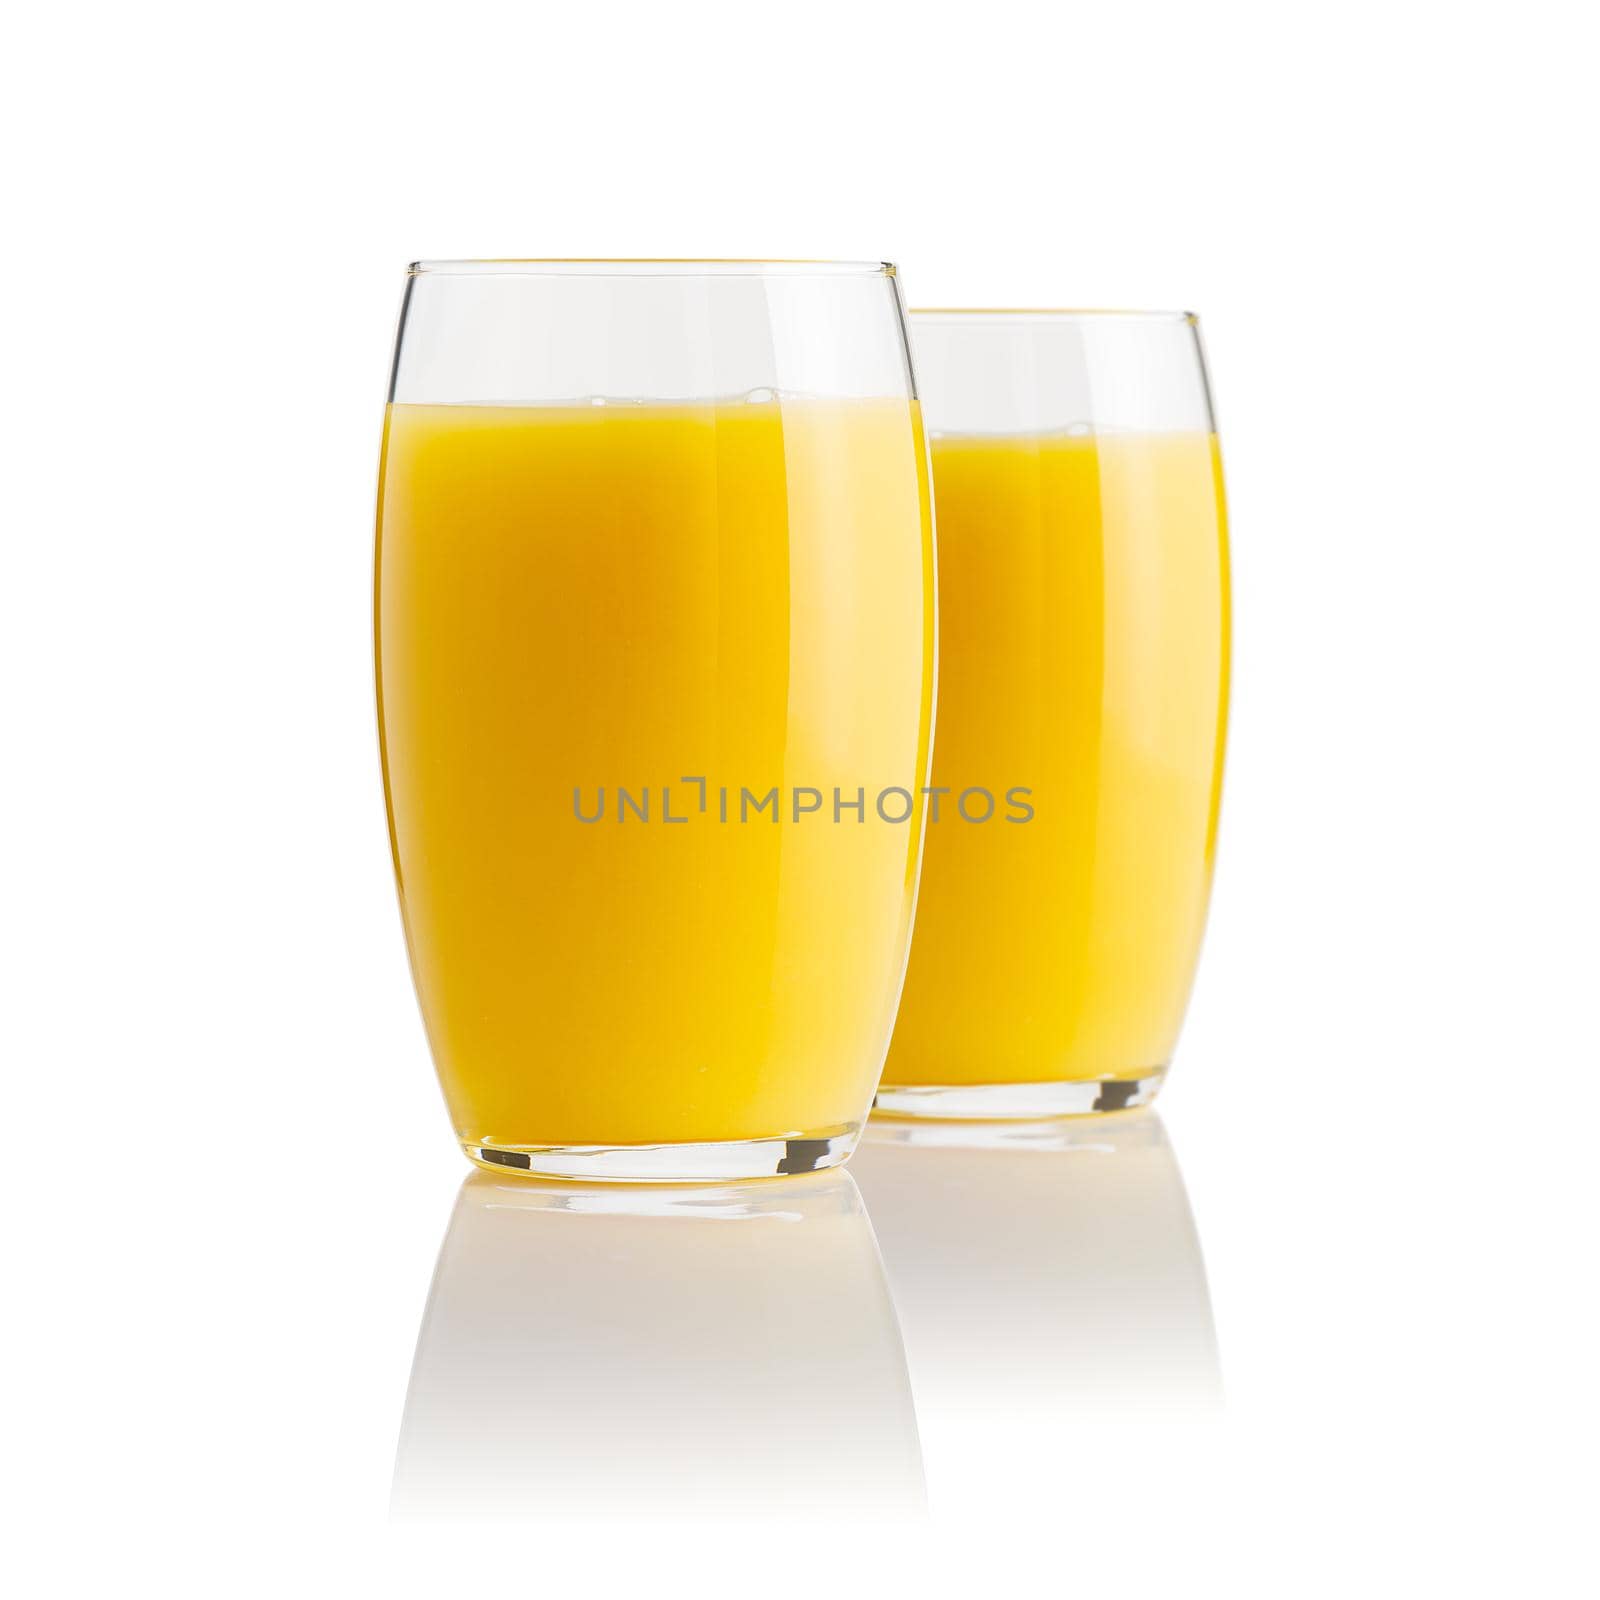 Orange juice glass, isolated on white. Glass of fresh orange juice on white background by PhotoTime